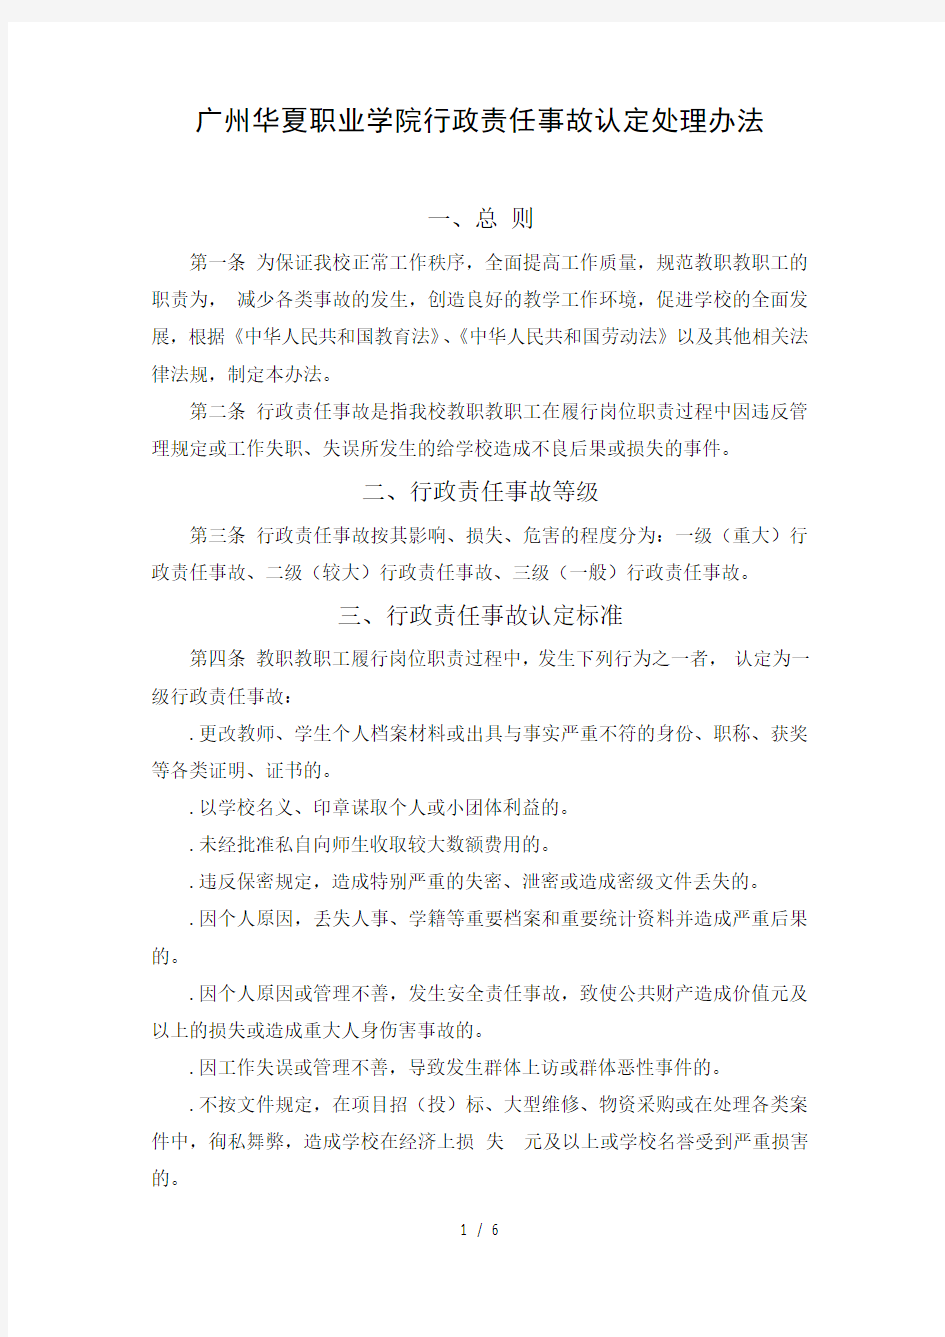 广州华夏职业学院行政责任事故认定处理办法